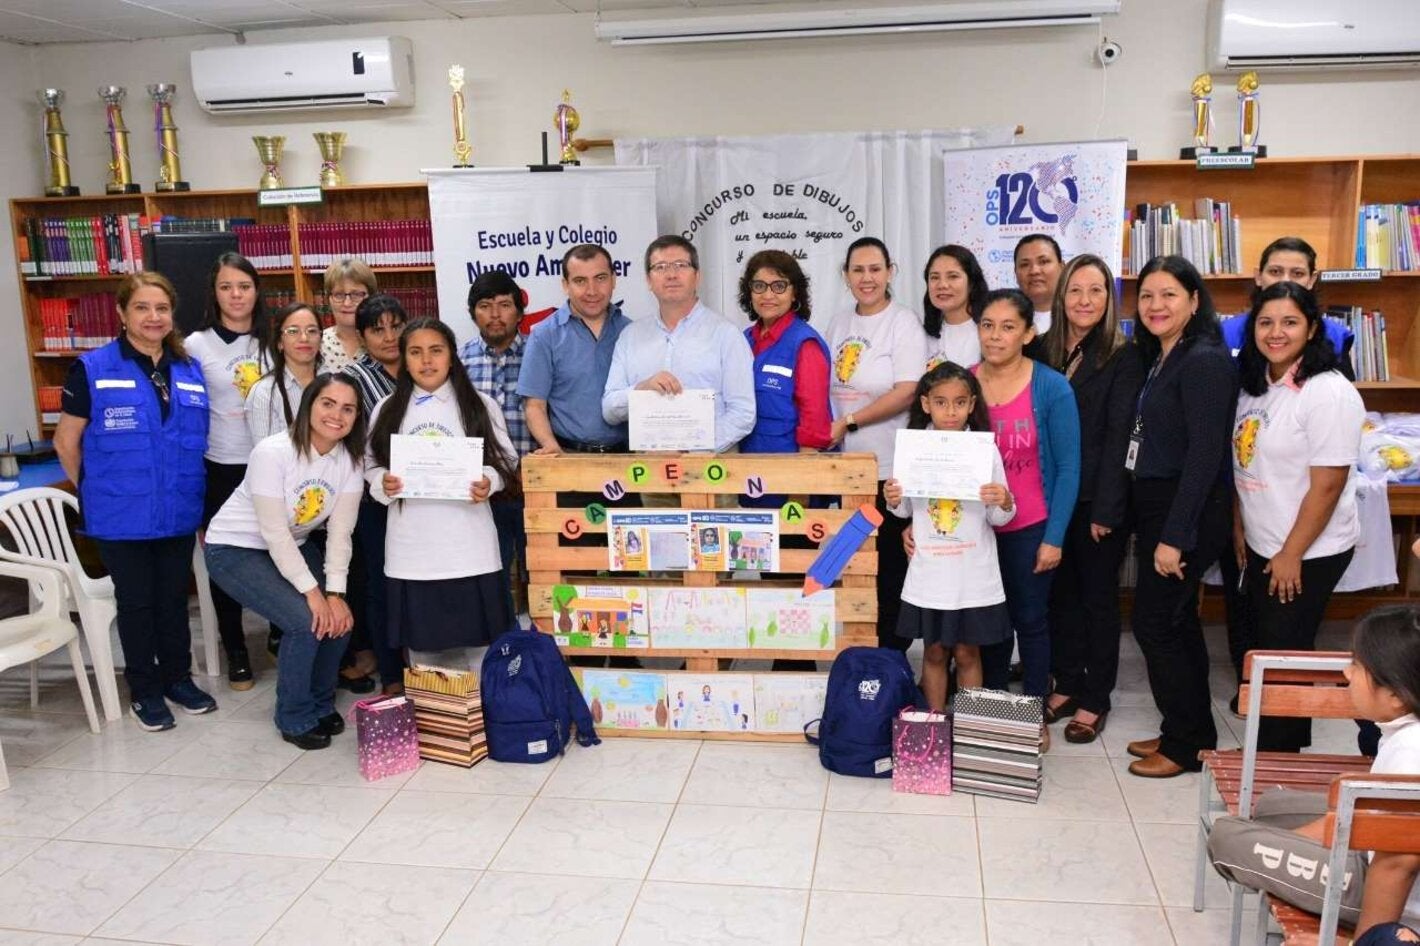 Concurso de dibujos en Paraguay "Mi escuela, un espacio seguro y saludable para mí, mi familia y mi comunidad" por el 120 aniversario de OPS, entregó premios a estudiantes y escuela de Boquerón, Chaco paraguayo 